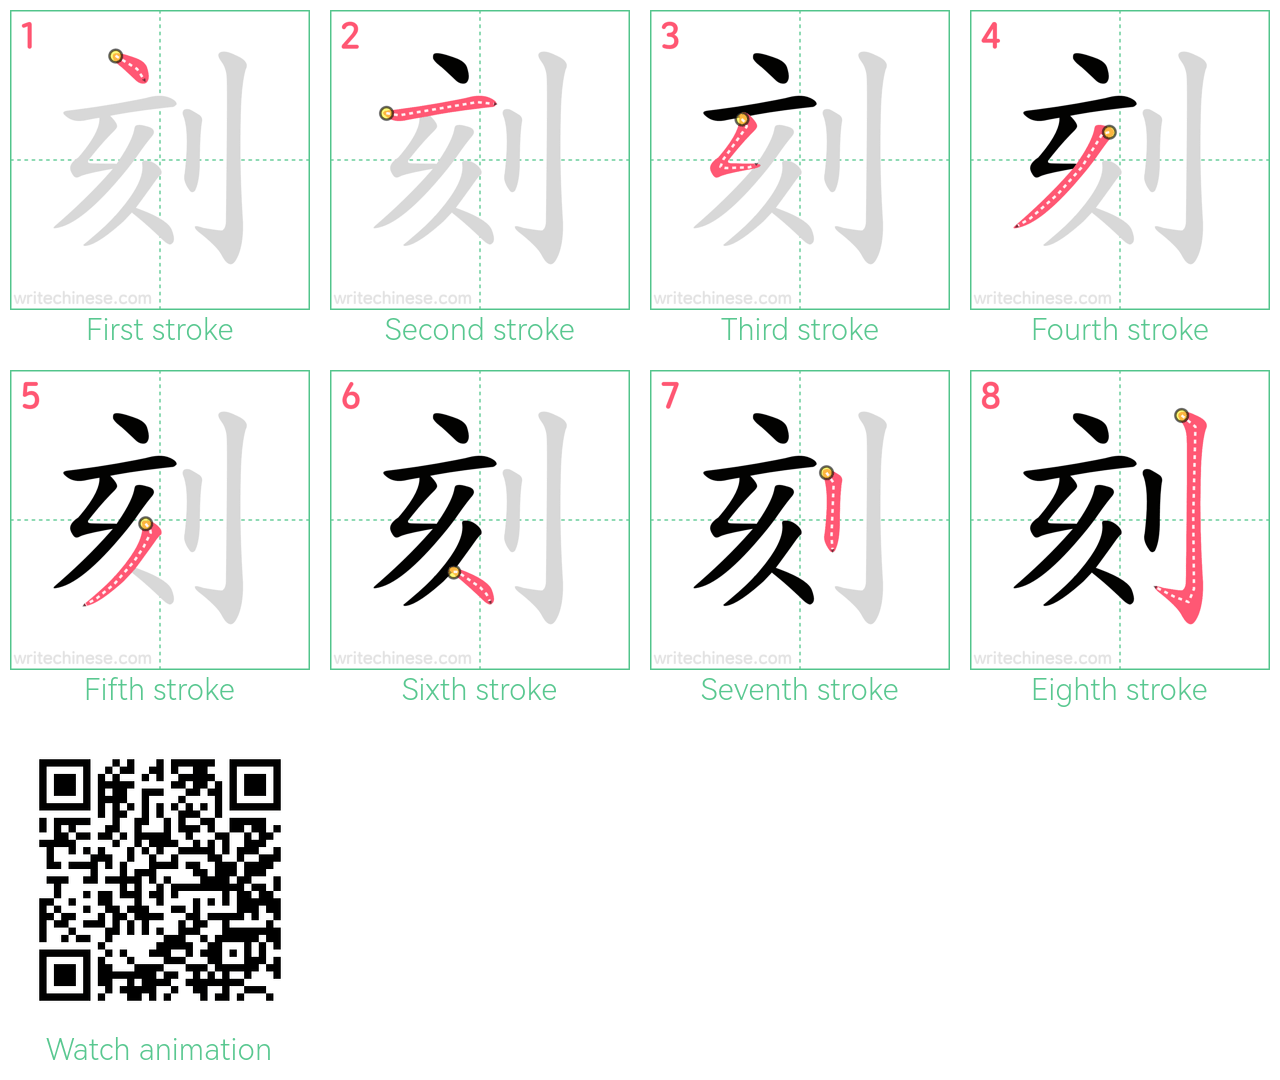 刻 step-by-step stroke order diagrams